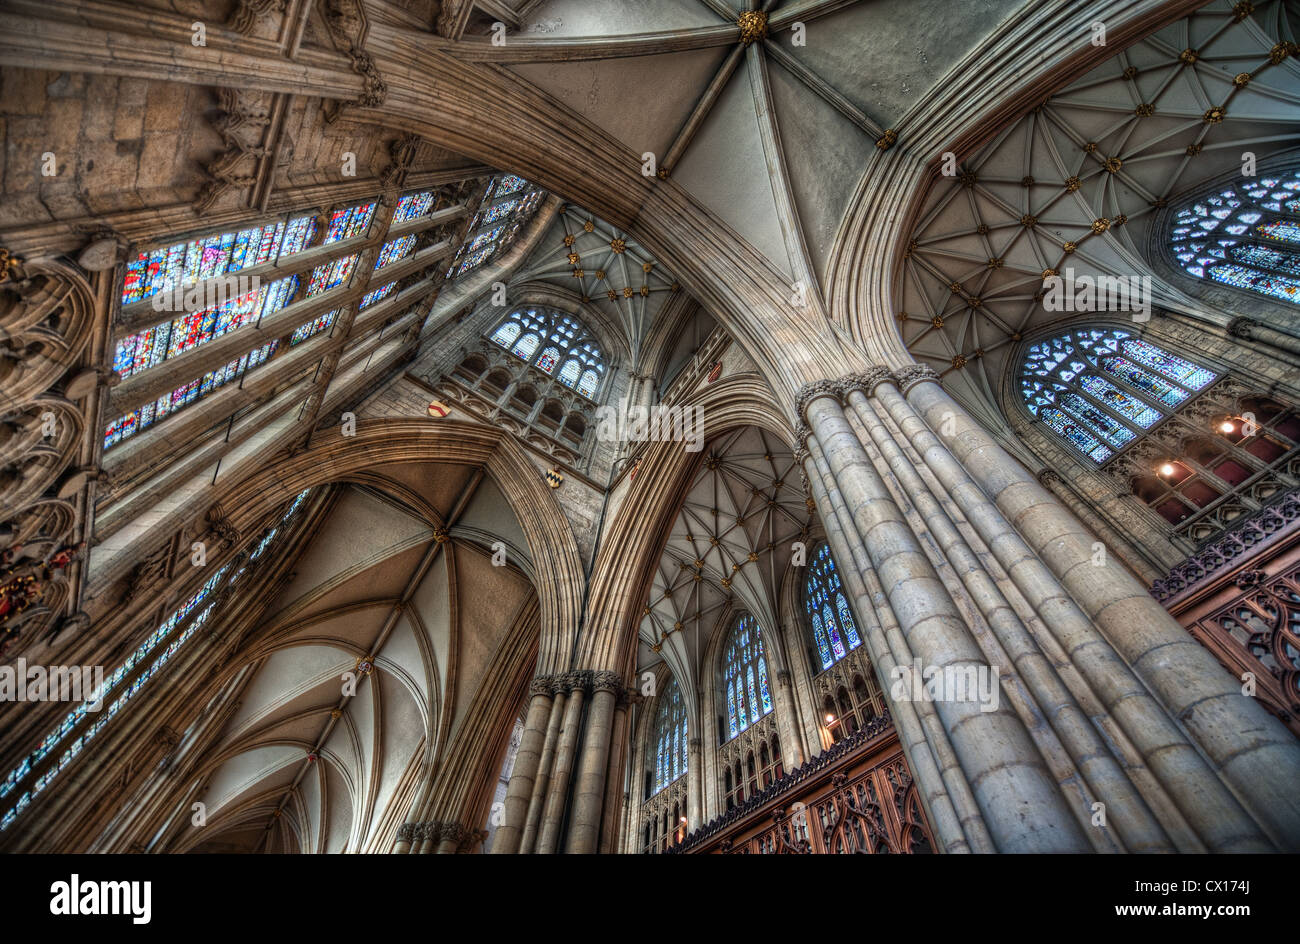 Gerippt, Gewölbe, aufwendige Maßwerk und Glasmalerei Fenster Merkmal der gotischen Architektur in der Kathedrale von Leeds, England Stockfoto